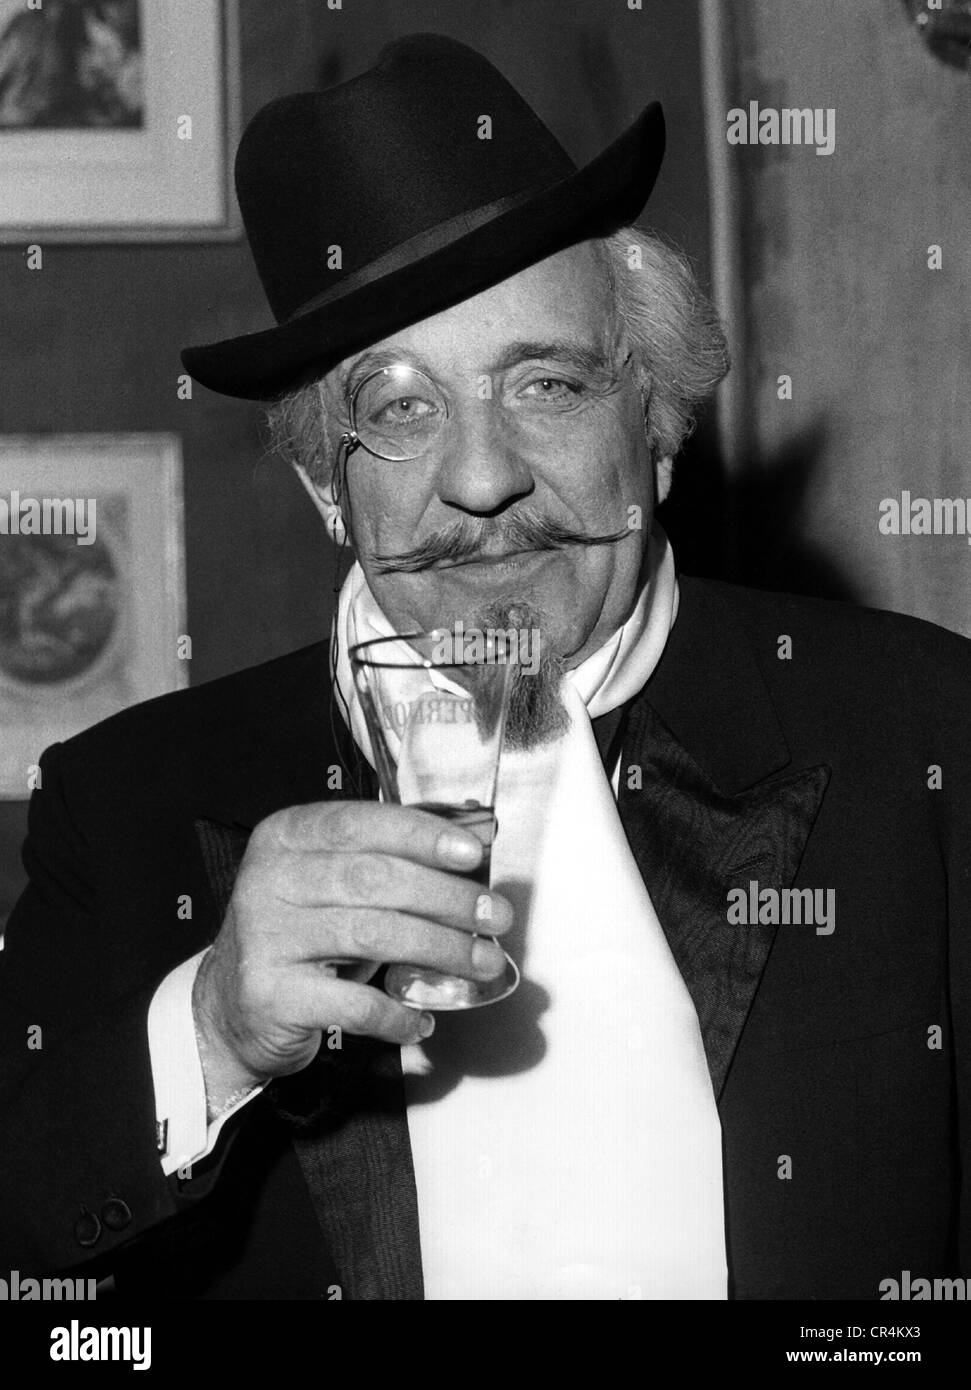 Hasse, otto Eduard, 11.7.1903 - 12.9.1978, attore cinematografico tedesco, scena di un film sconosciuto, 1960s, Foto Stock